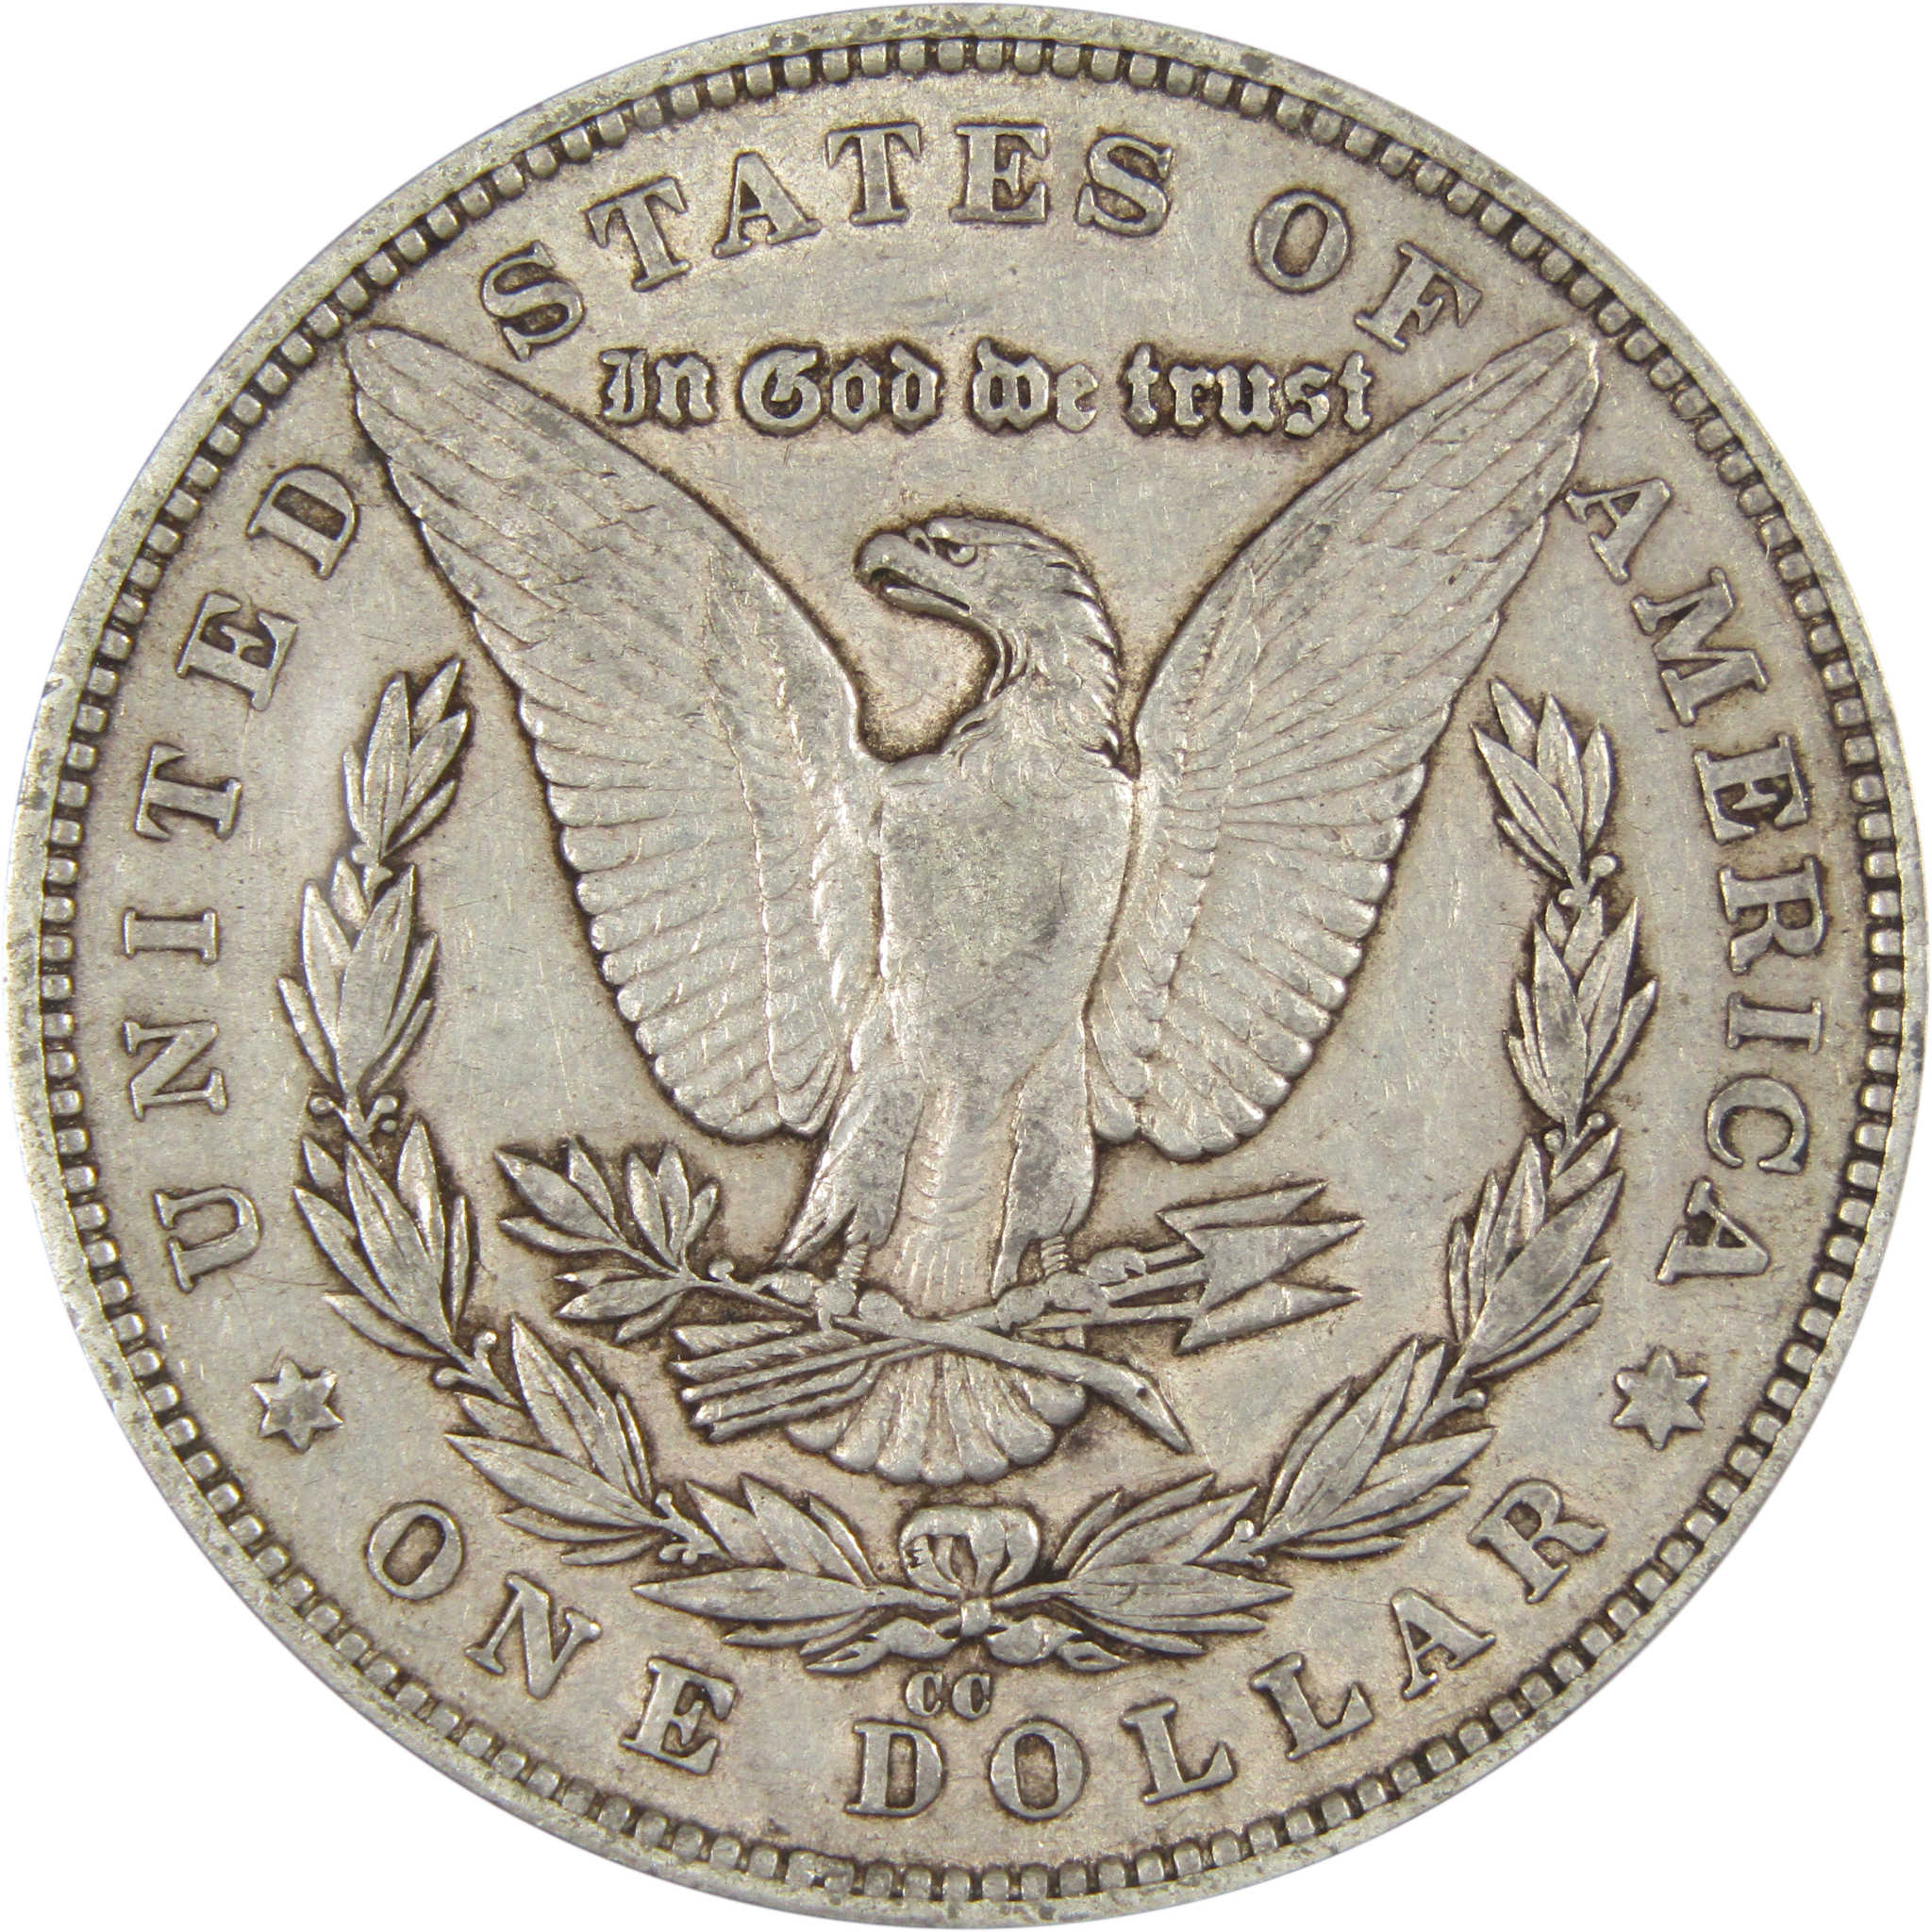 1879 CC Morgan Dollar EF 45 ANACS 90% Silver US Coin SKU:IPC6981 - Morgan coin - Morgan silver dollar - Morgan silver dollar for sale - Profile Coins &amp; Collectibles